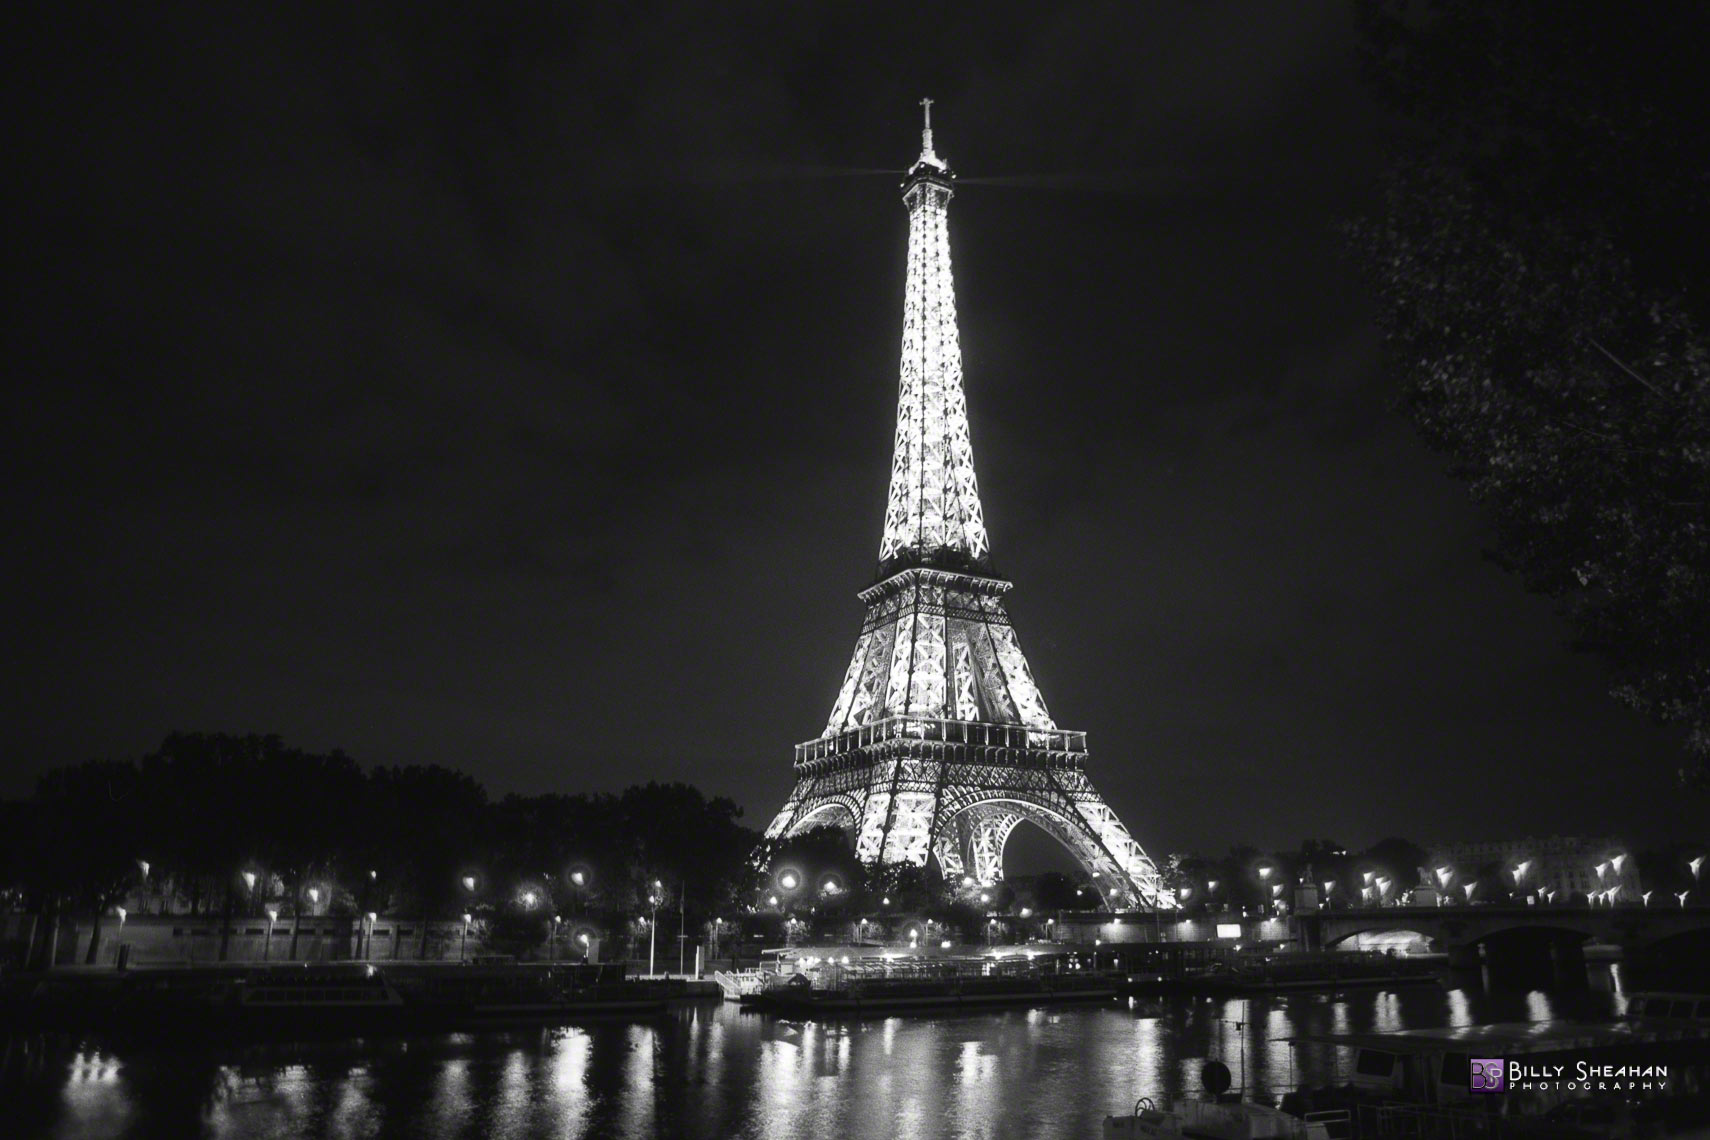 La_Tour_Eiffel_a_Pont_d_lena__Paris__France_Paris-1359_17_D